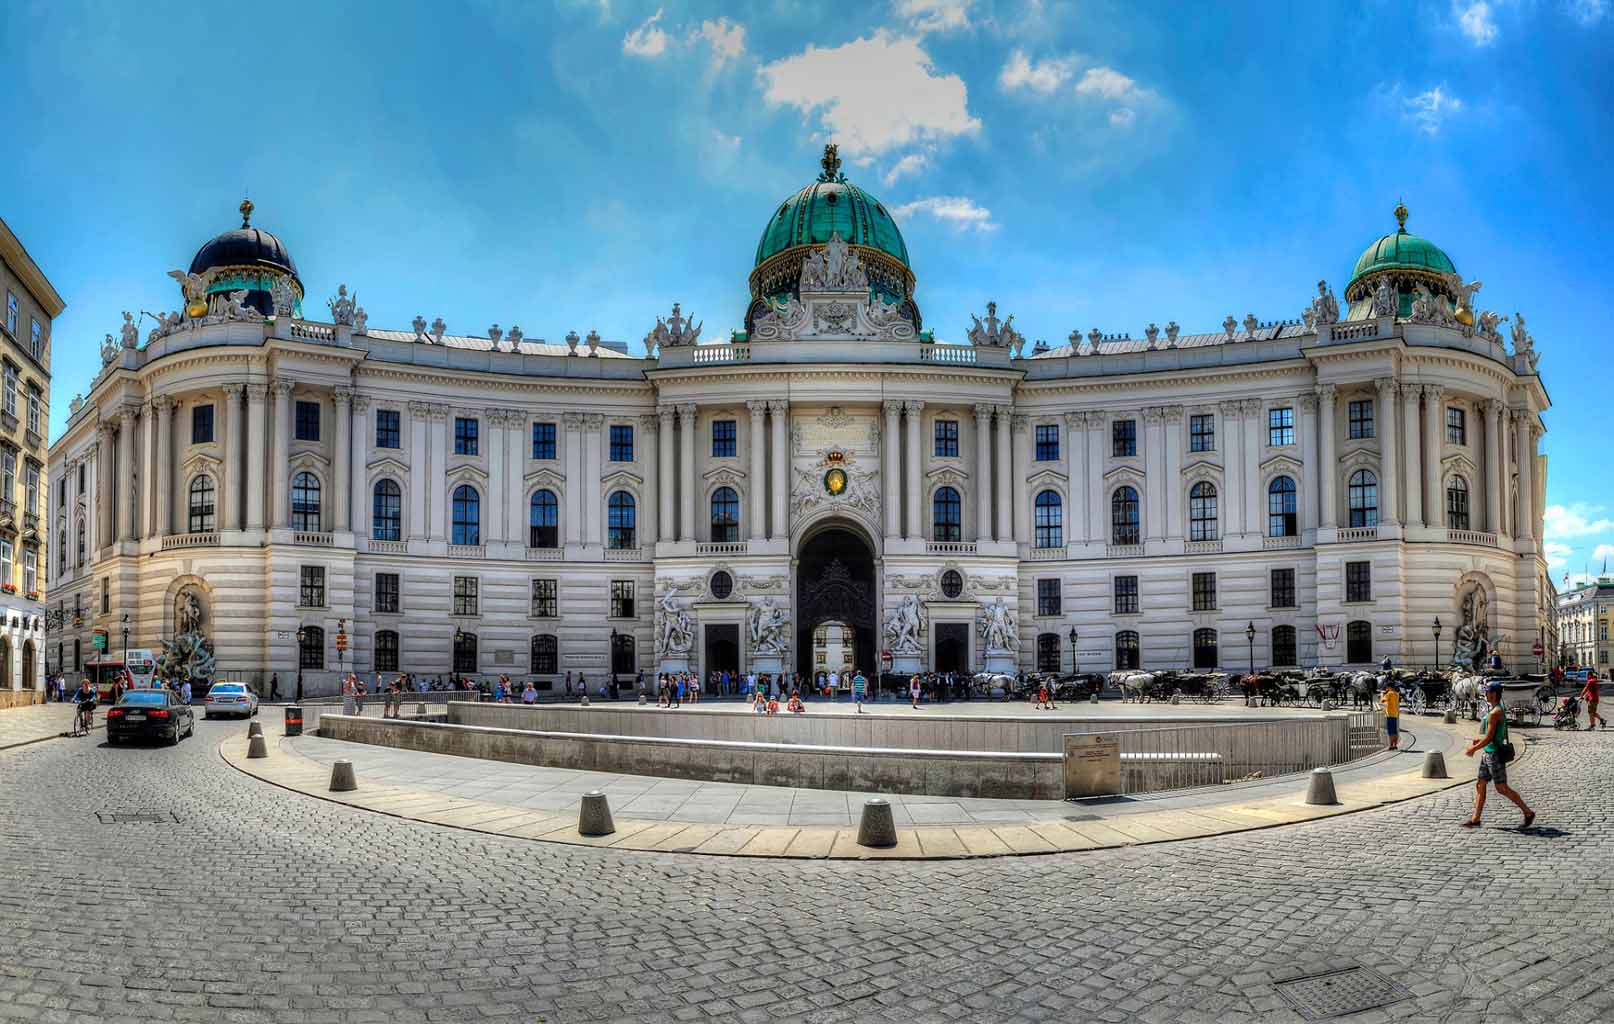 Cung điện Hoàng Gia Hofburg Palace